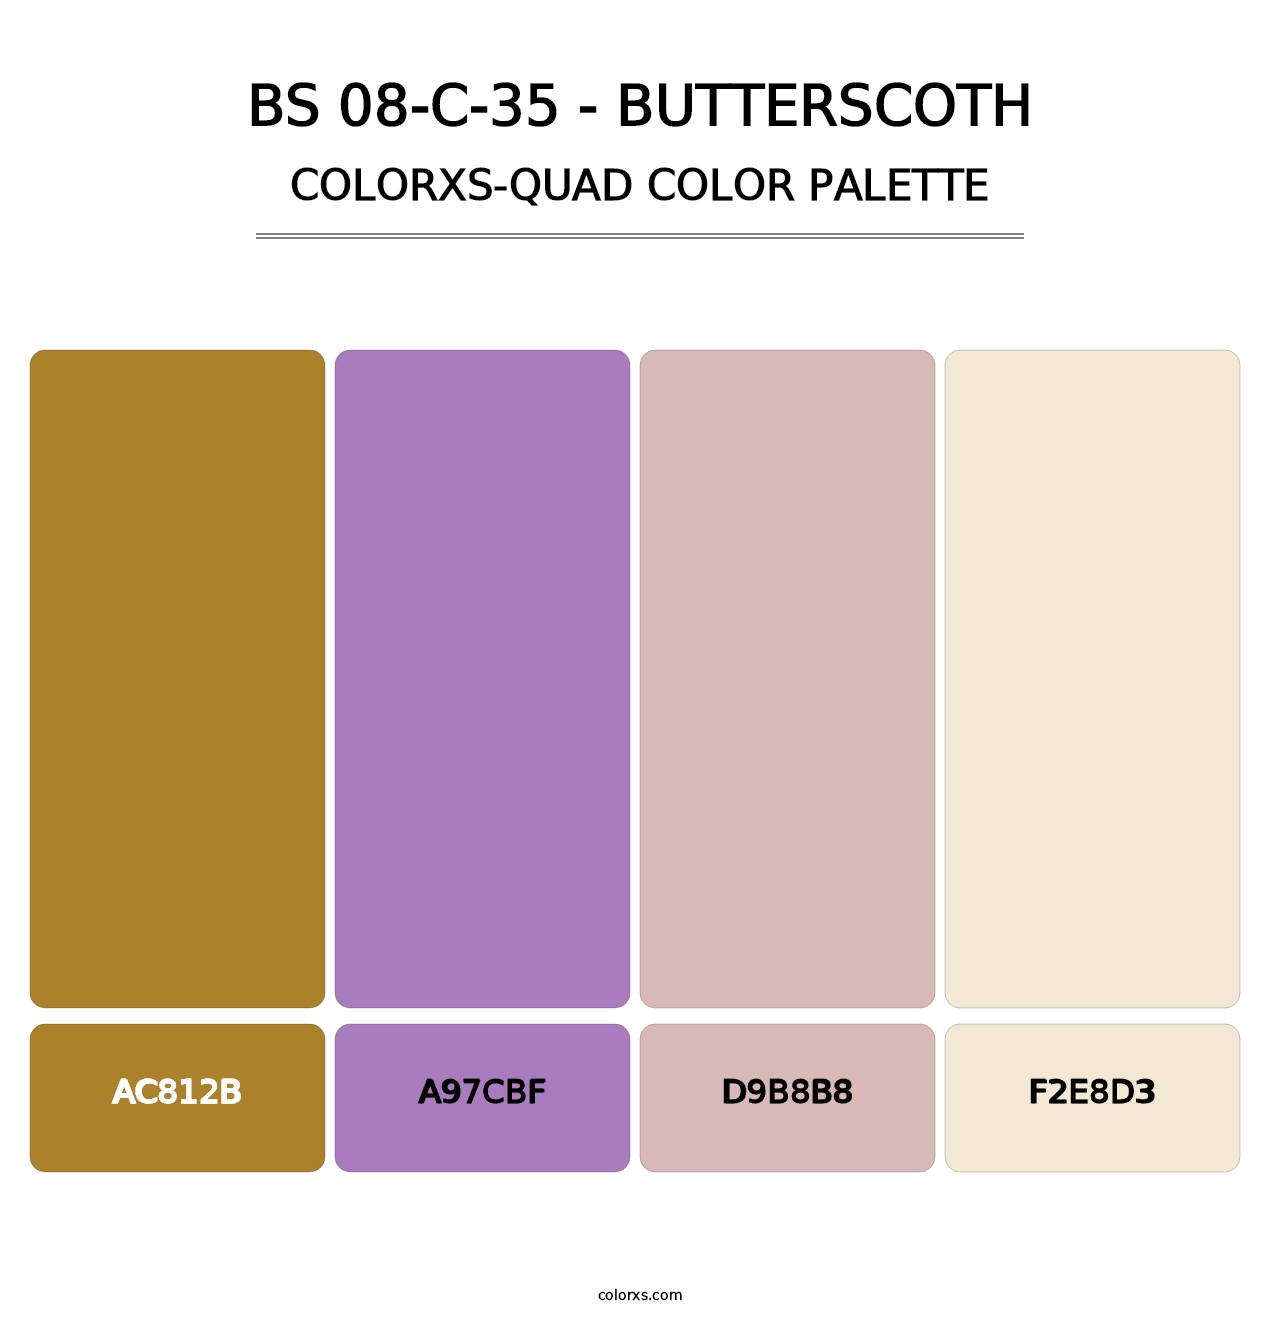 BS 08-C-35 - Butterscoth - Colorxs Quad Palette